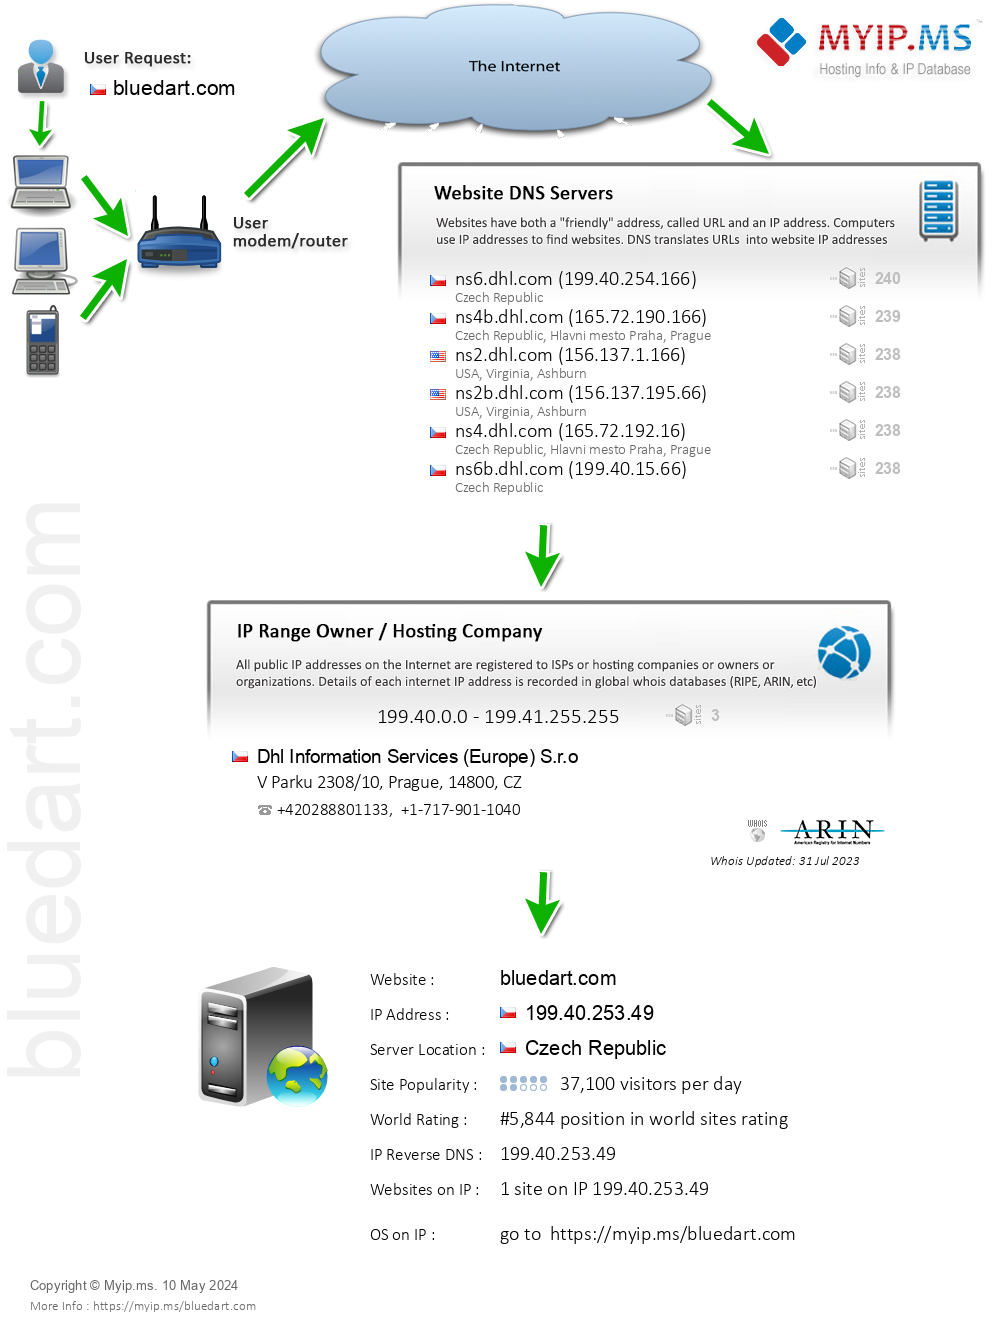 Bluedart.com - Website Hosting Visual IP Diagram